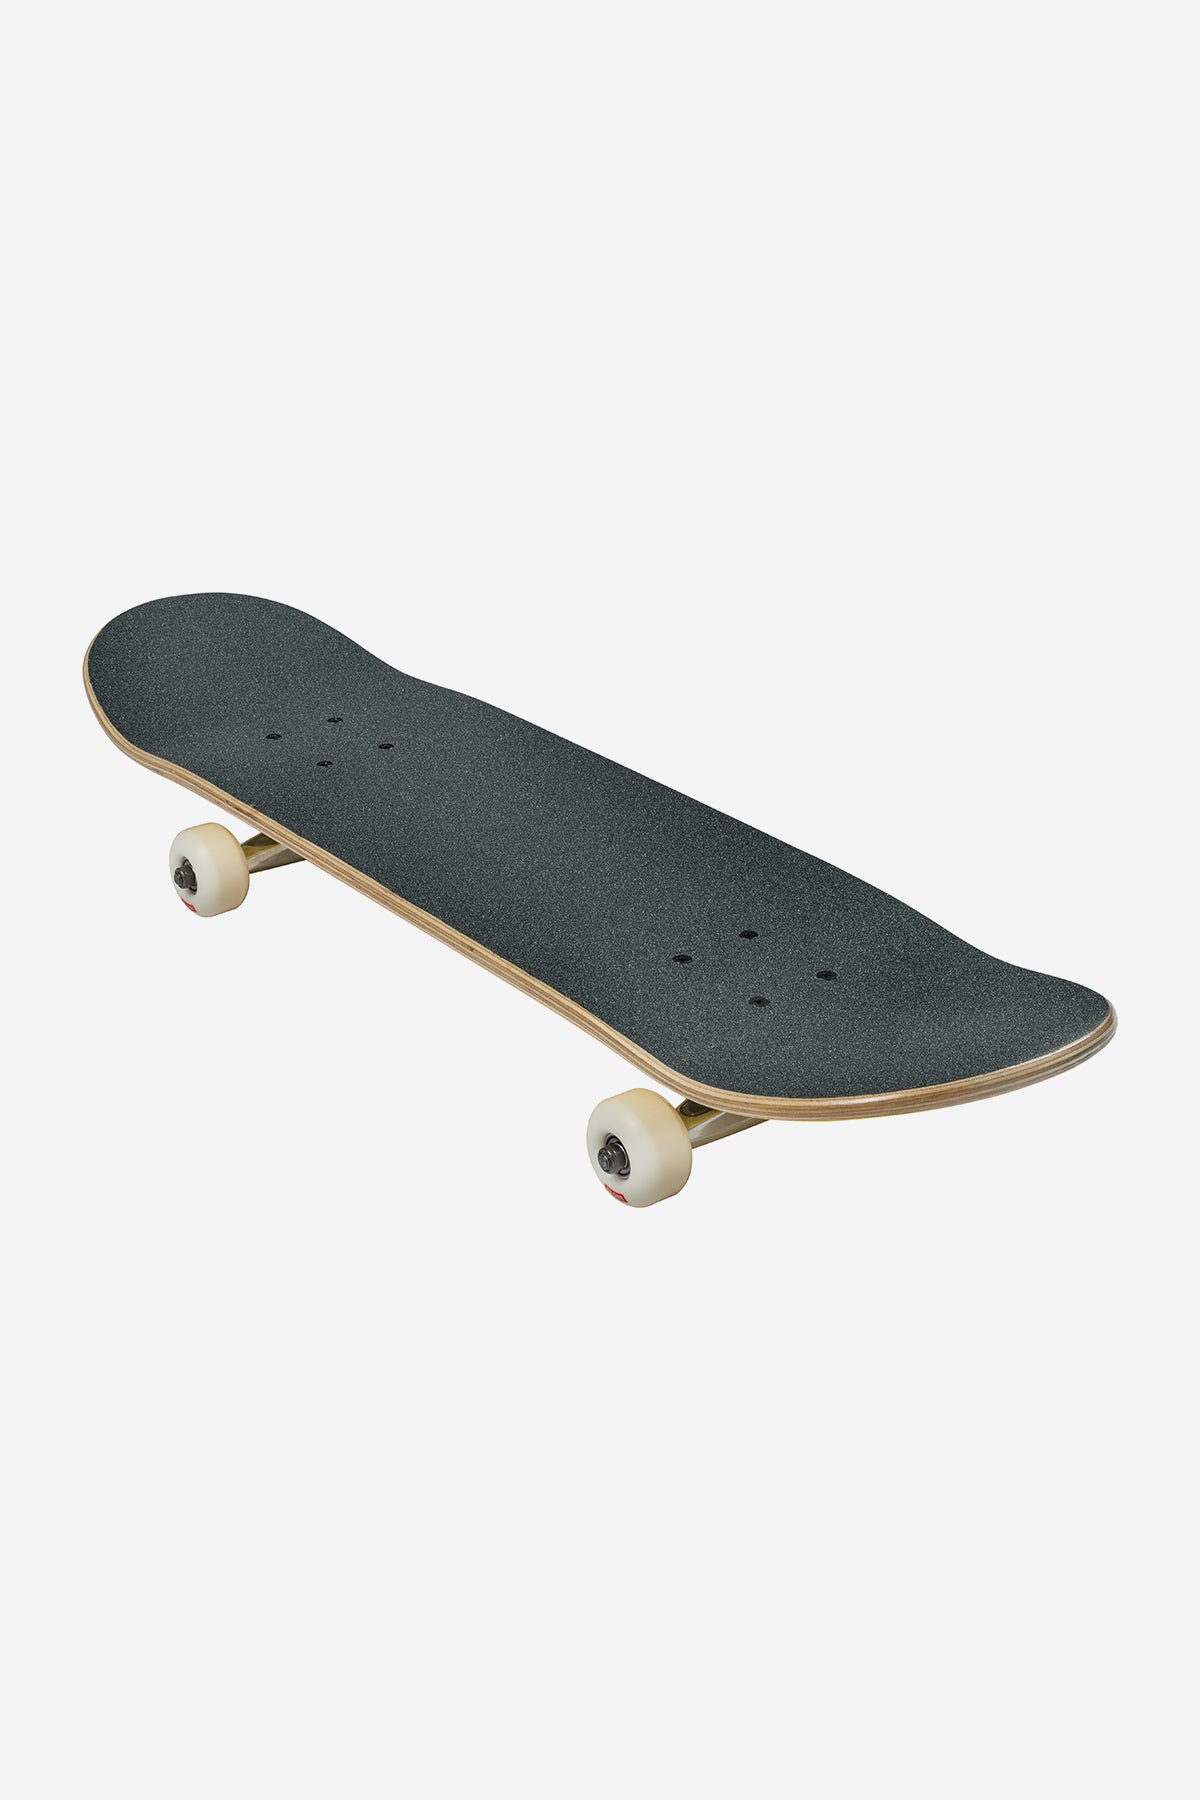 Goodstock - Black - 8.125" Complete Skateboard